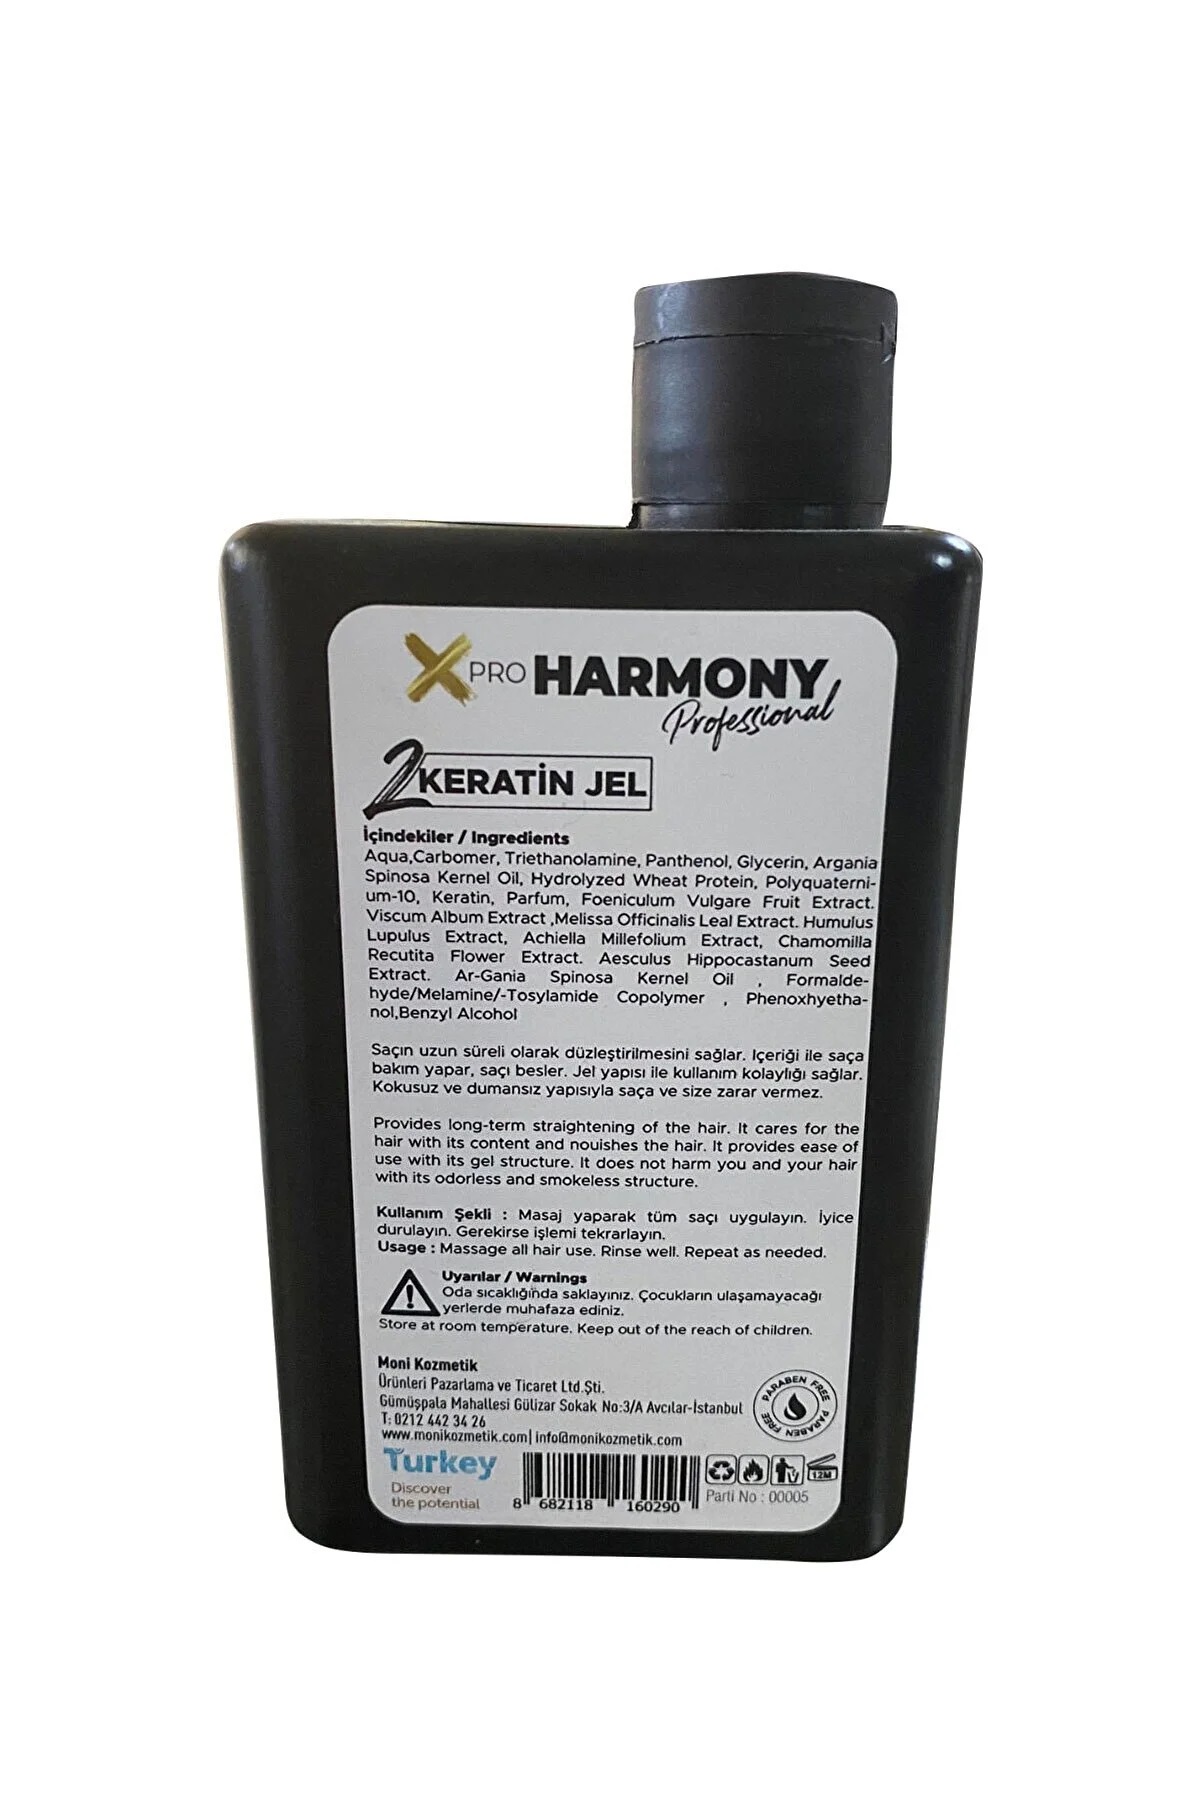 X Pro Harmony Profesyonel Keratin Jel 500 ml